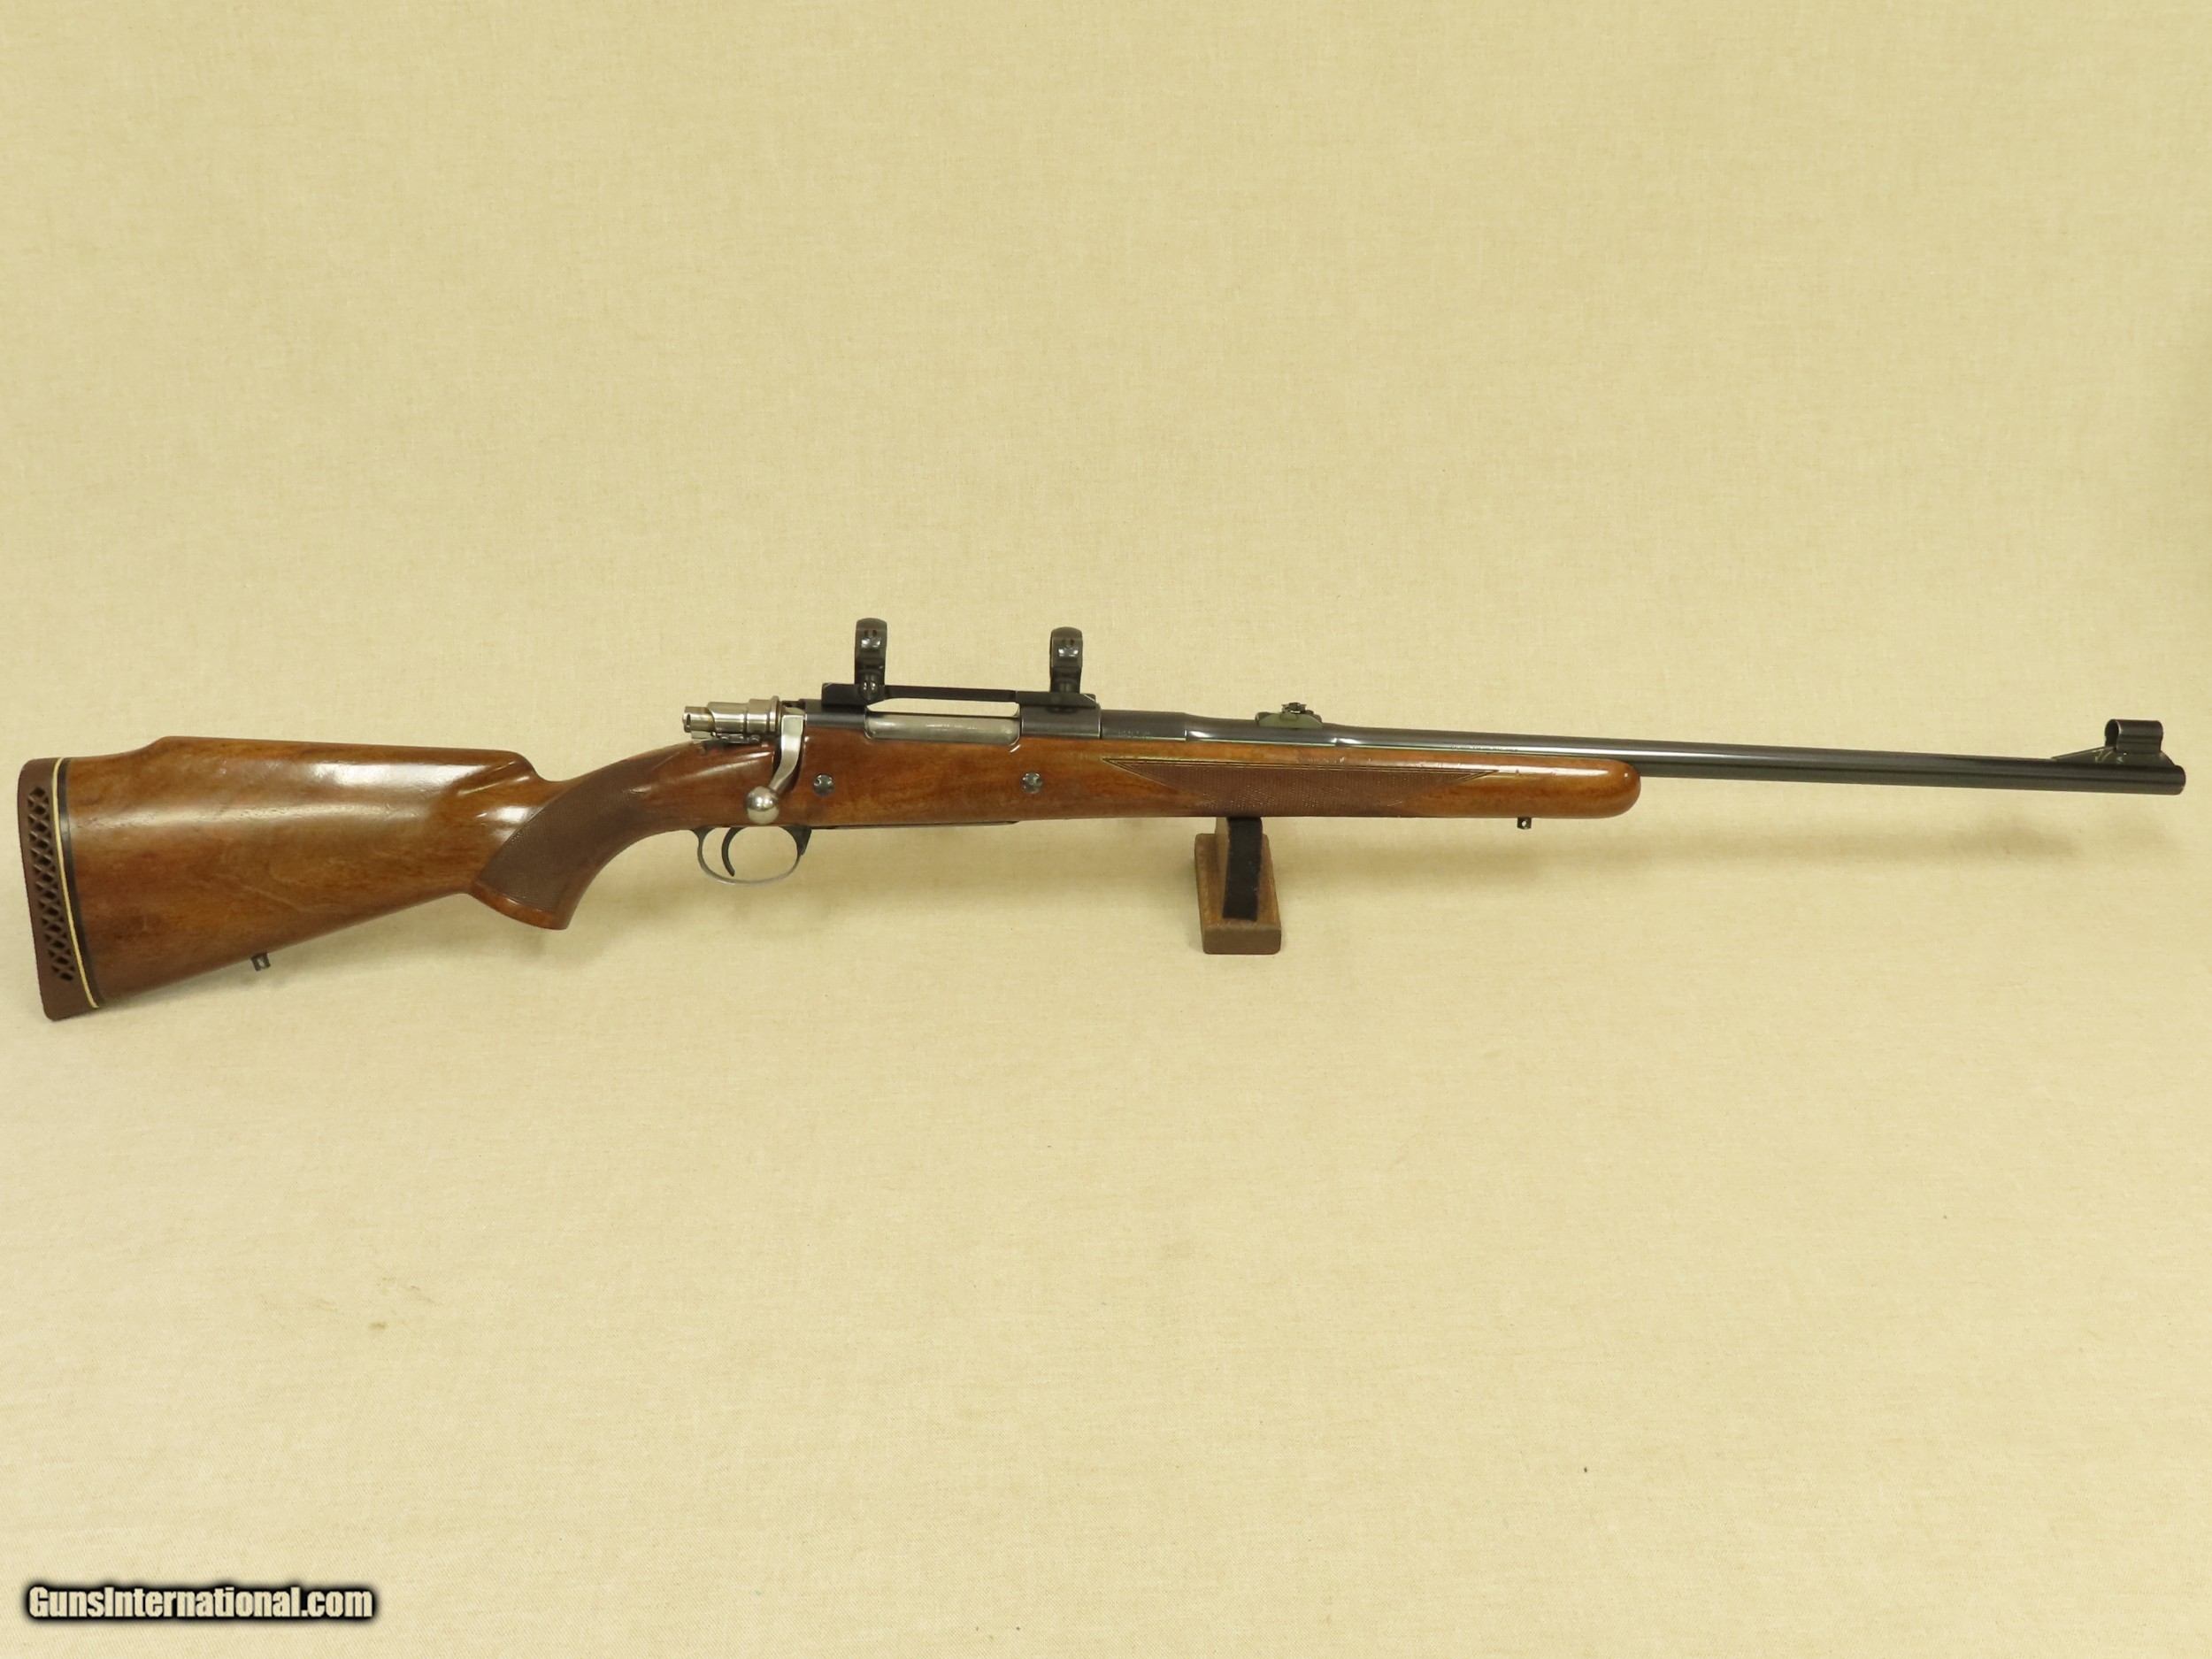 1971 Vintage Belgian Browning Safari Grade High Power Rifle In